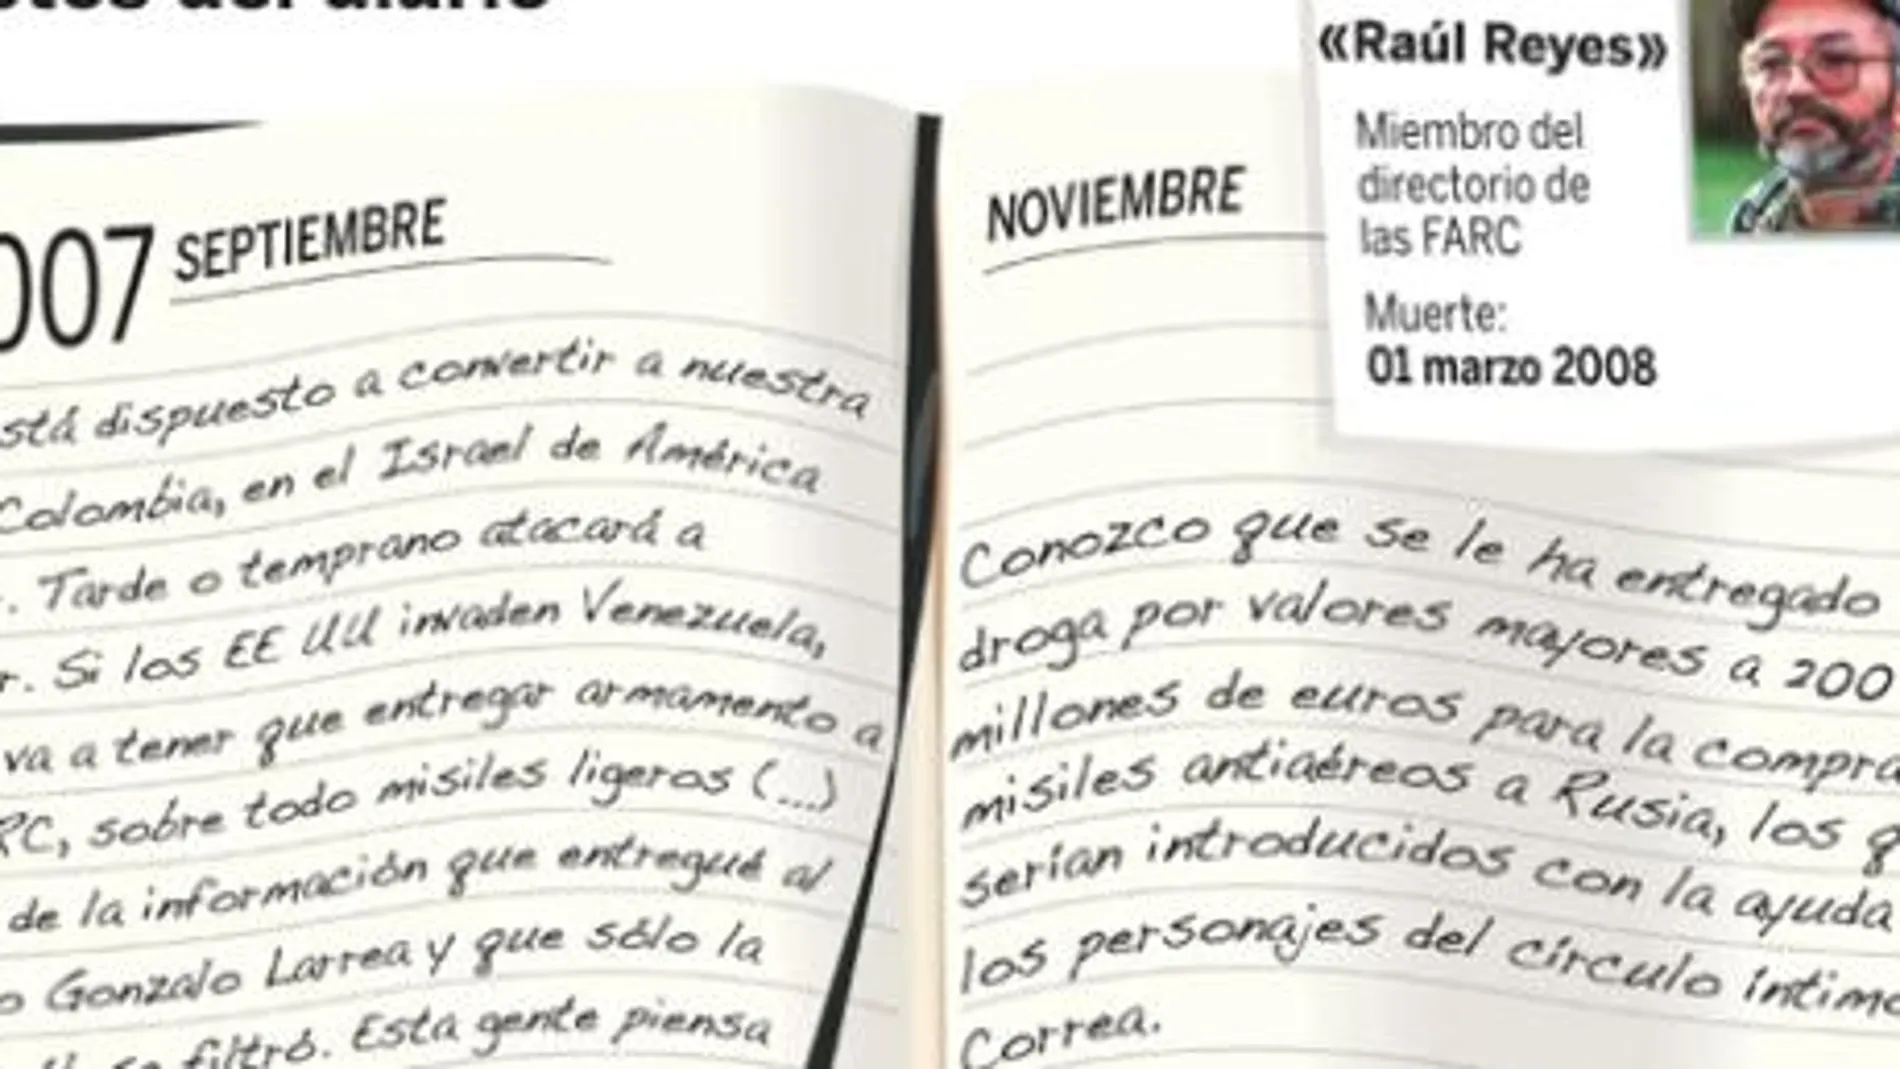 El diario de «Raúl Reyes» acusa a Correa